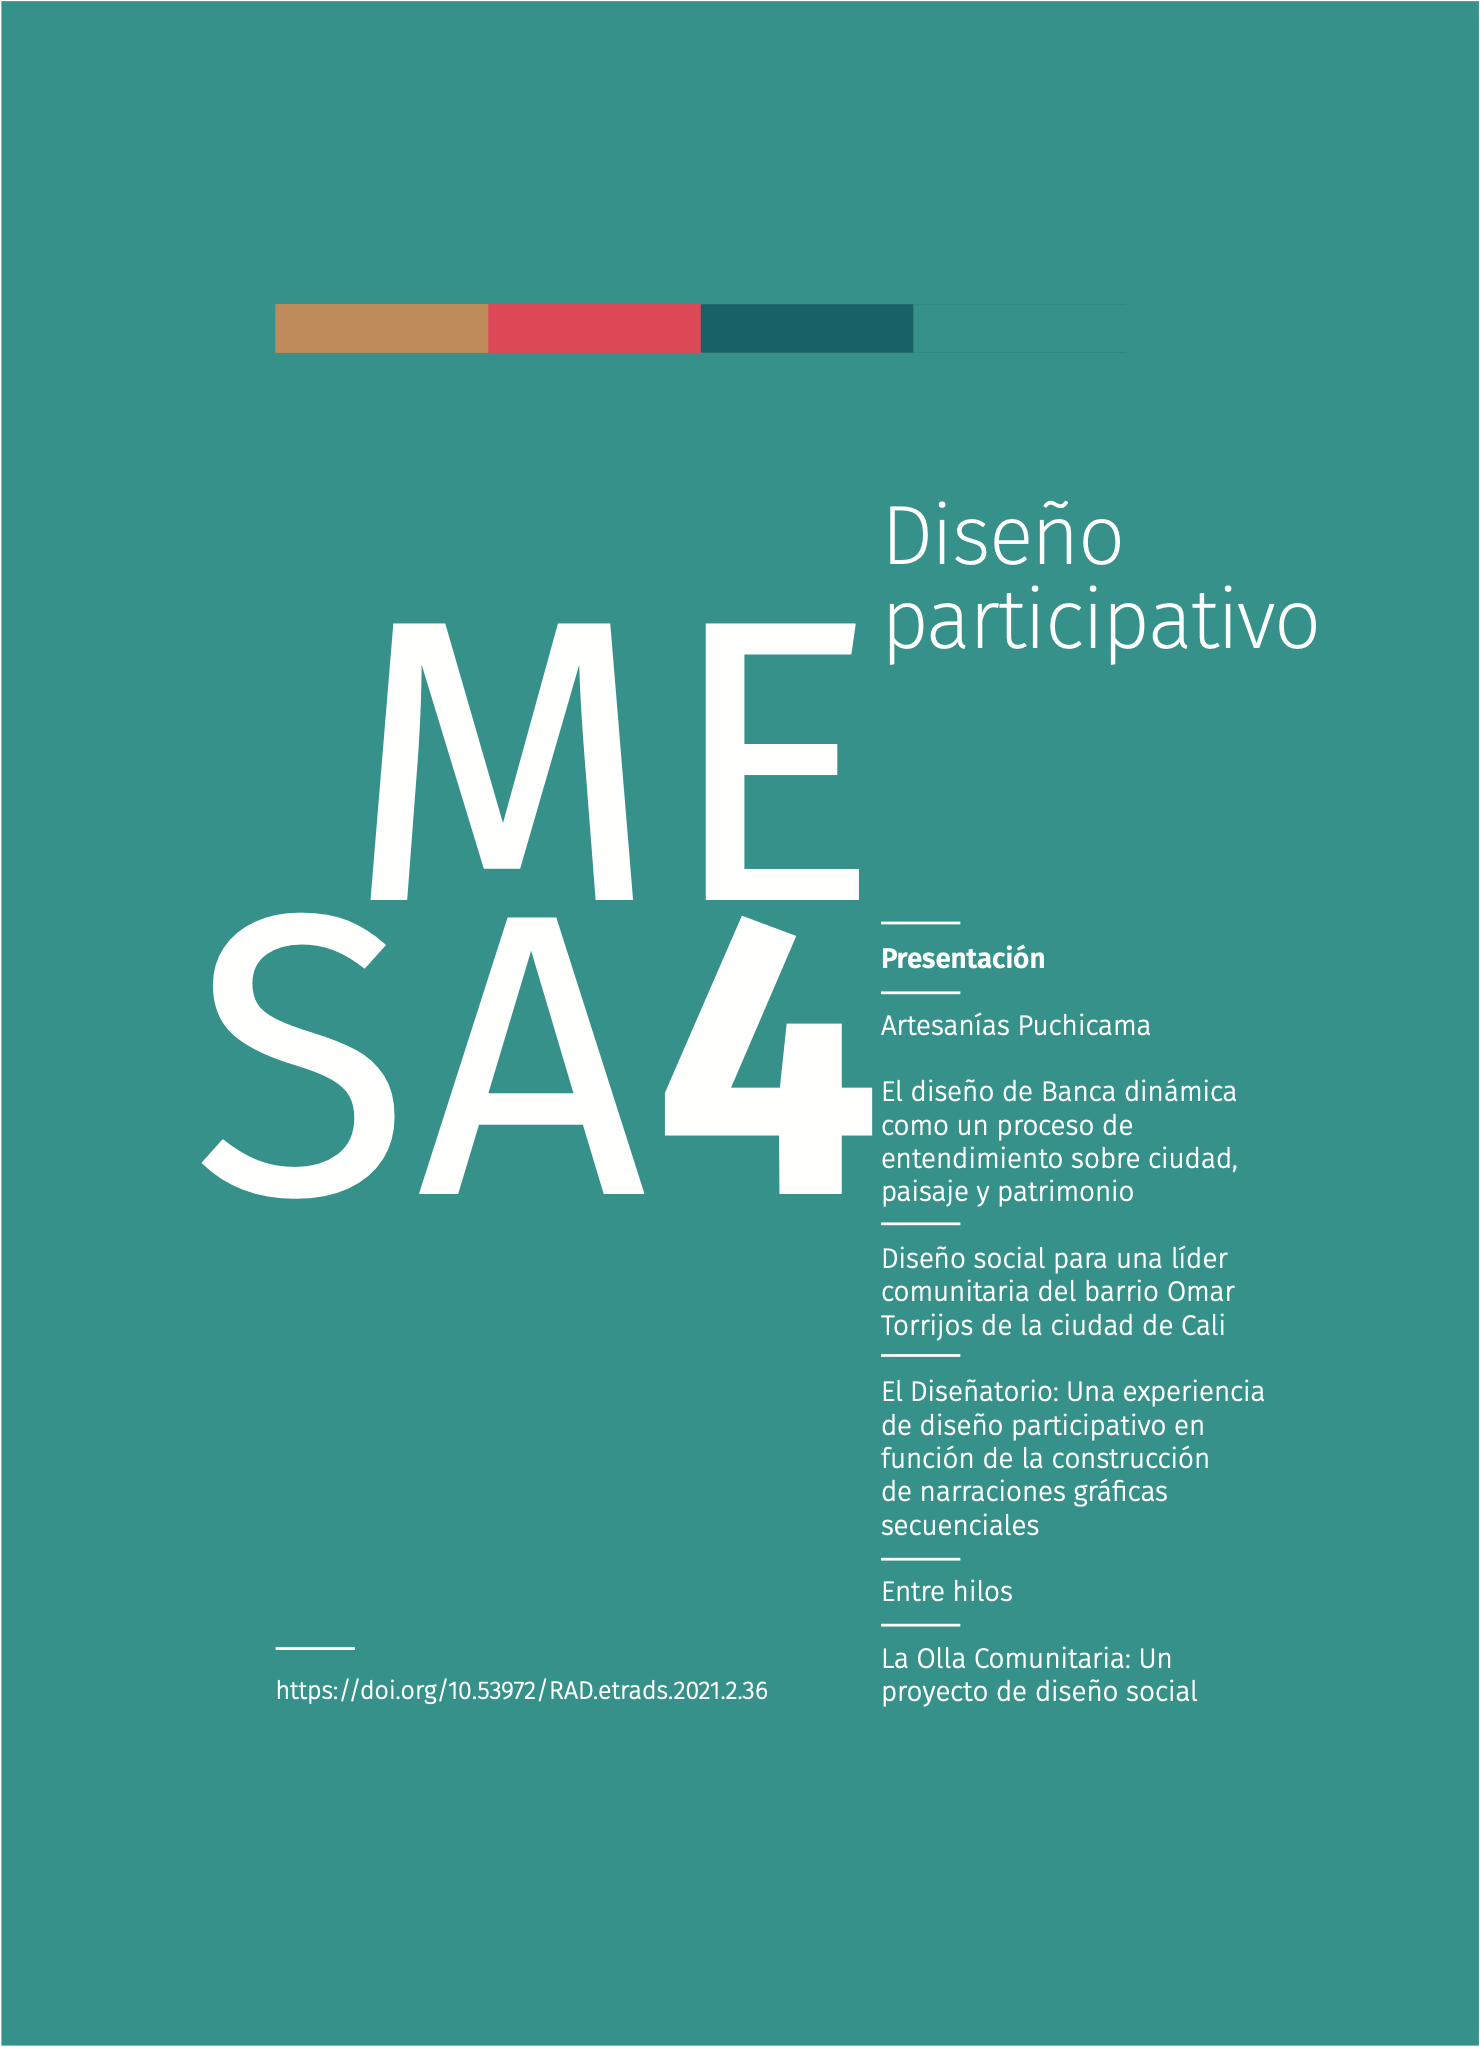 MESA 4 - Diseño participativo